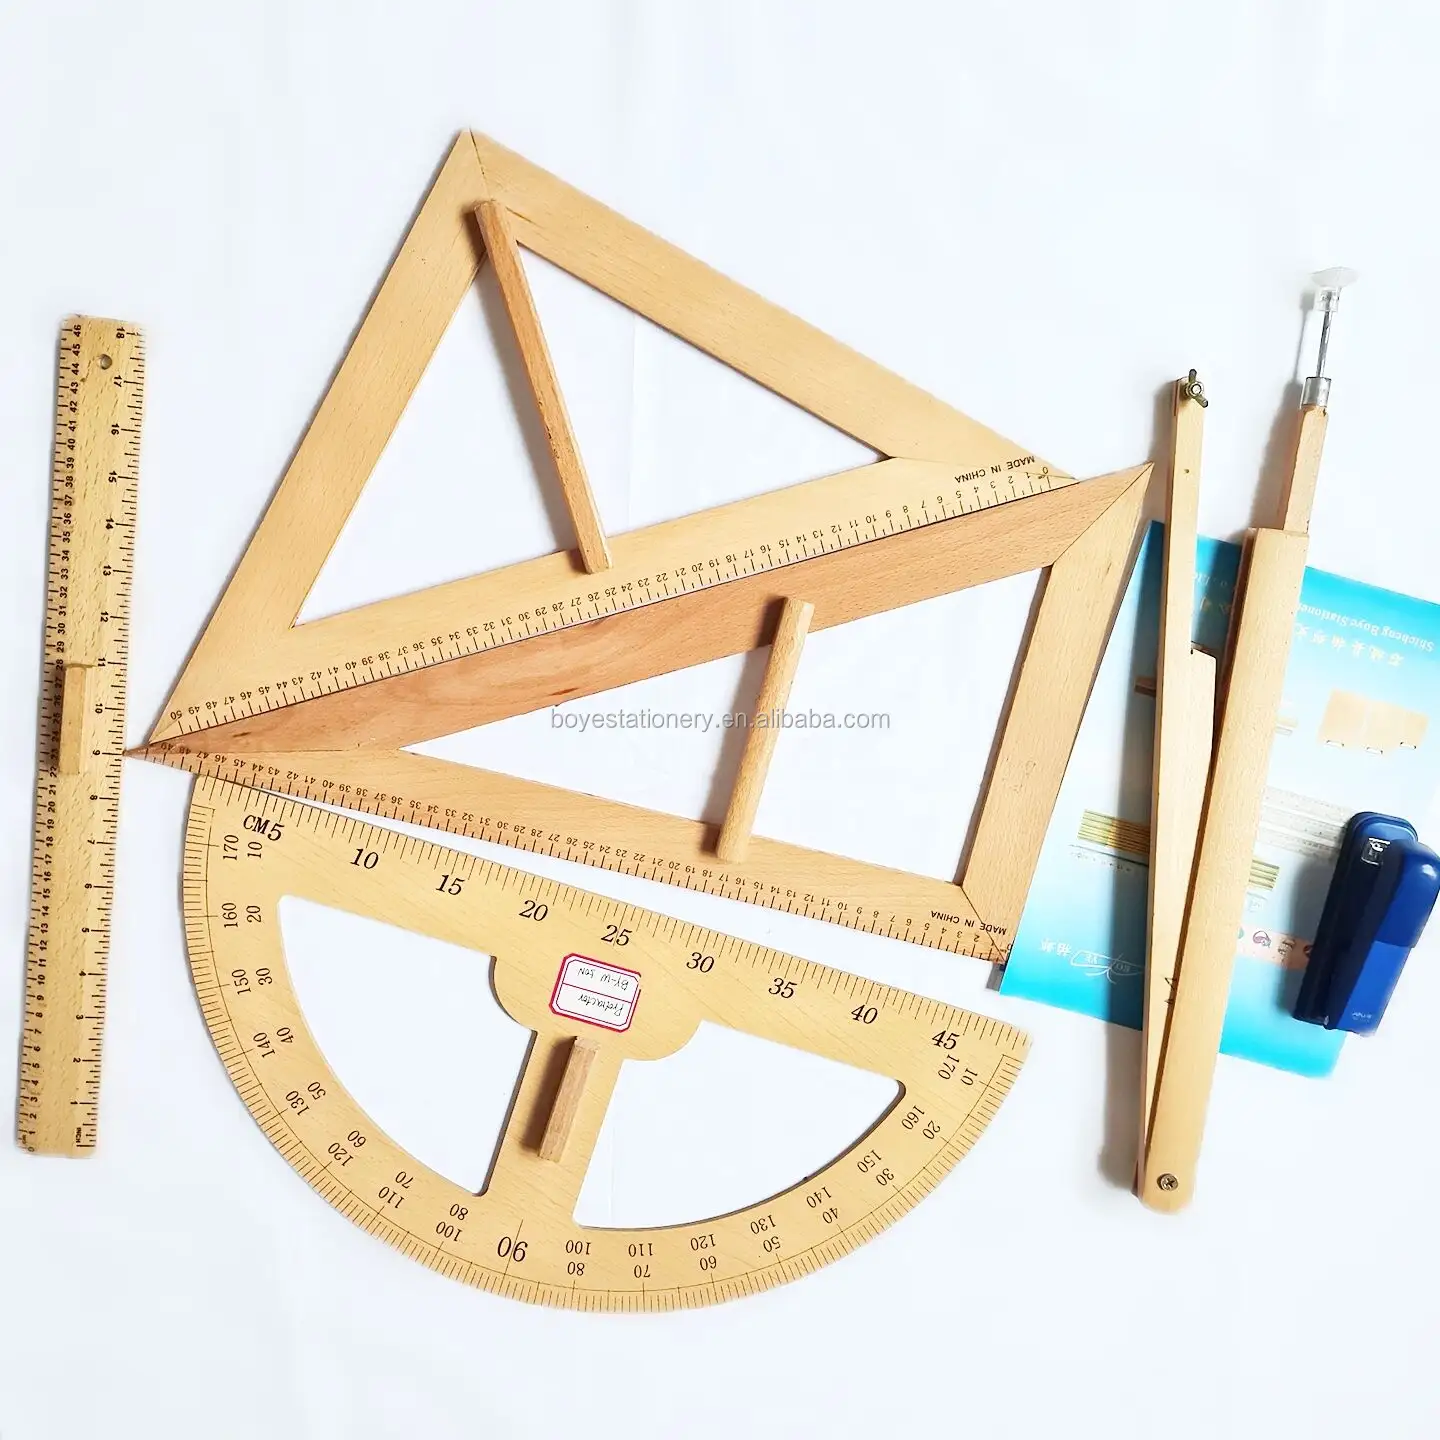 Escala geométrica de madeira, material de papelaria escolar, ferramentas de matemática, transferidor de madeira, régua triangular